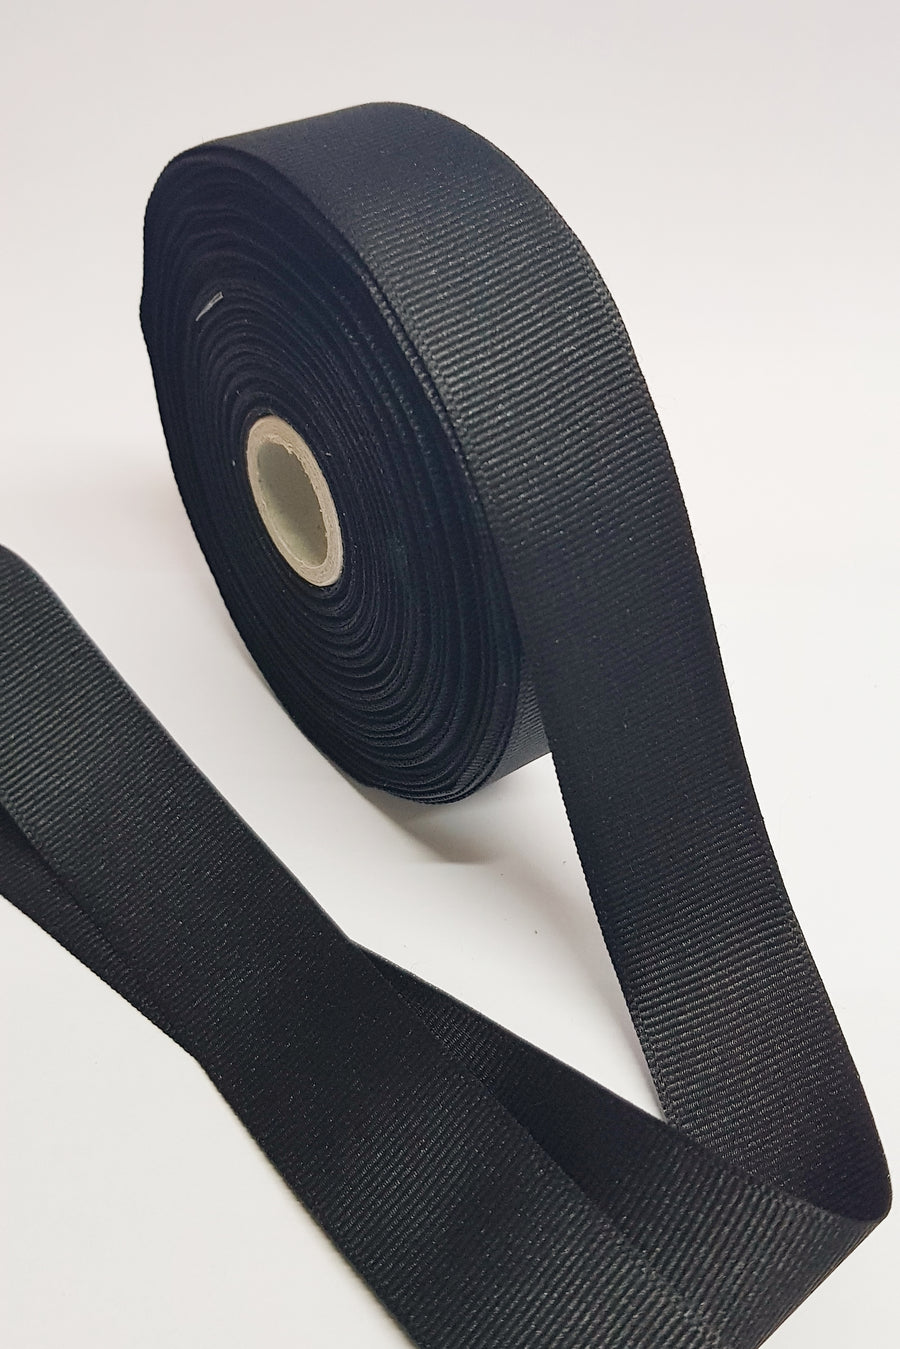 1 Inch Black Grosgrain Ribbon - 20 Meters Roll